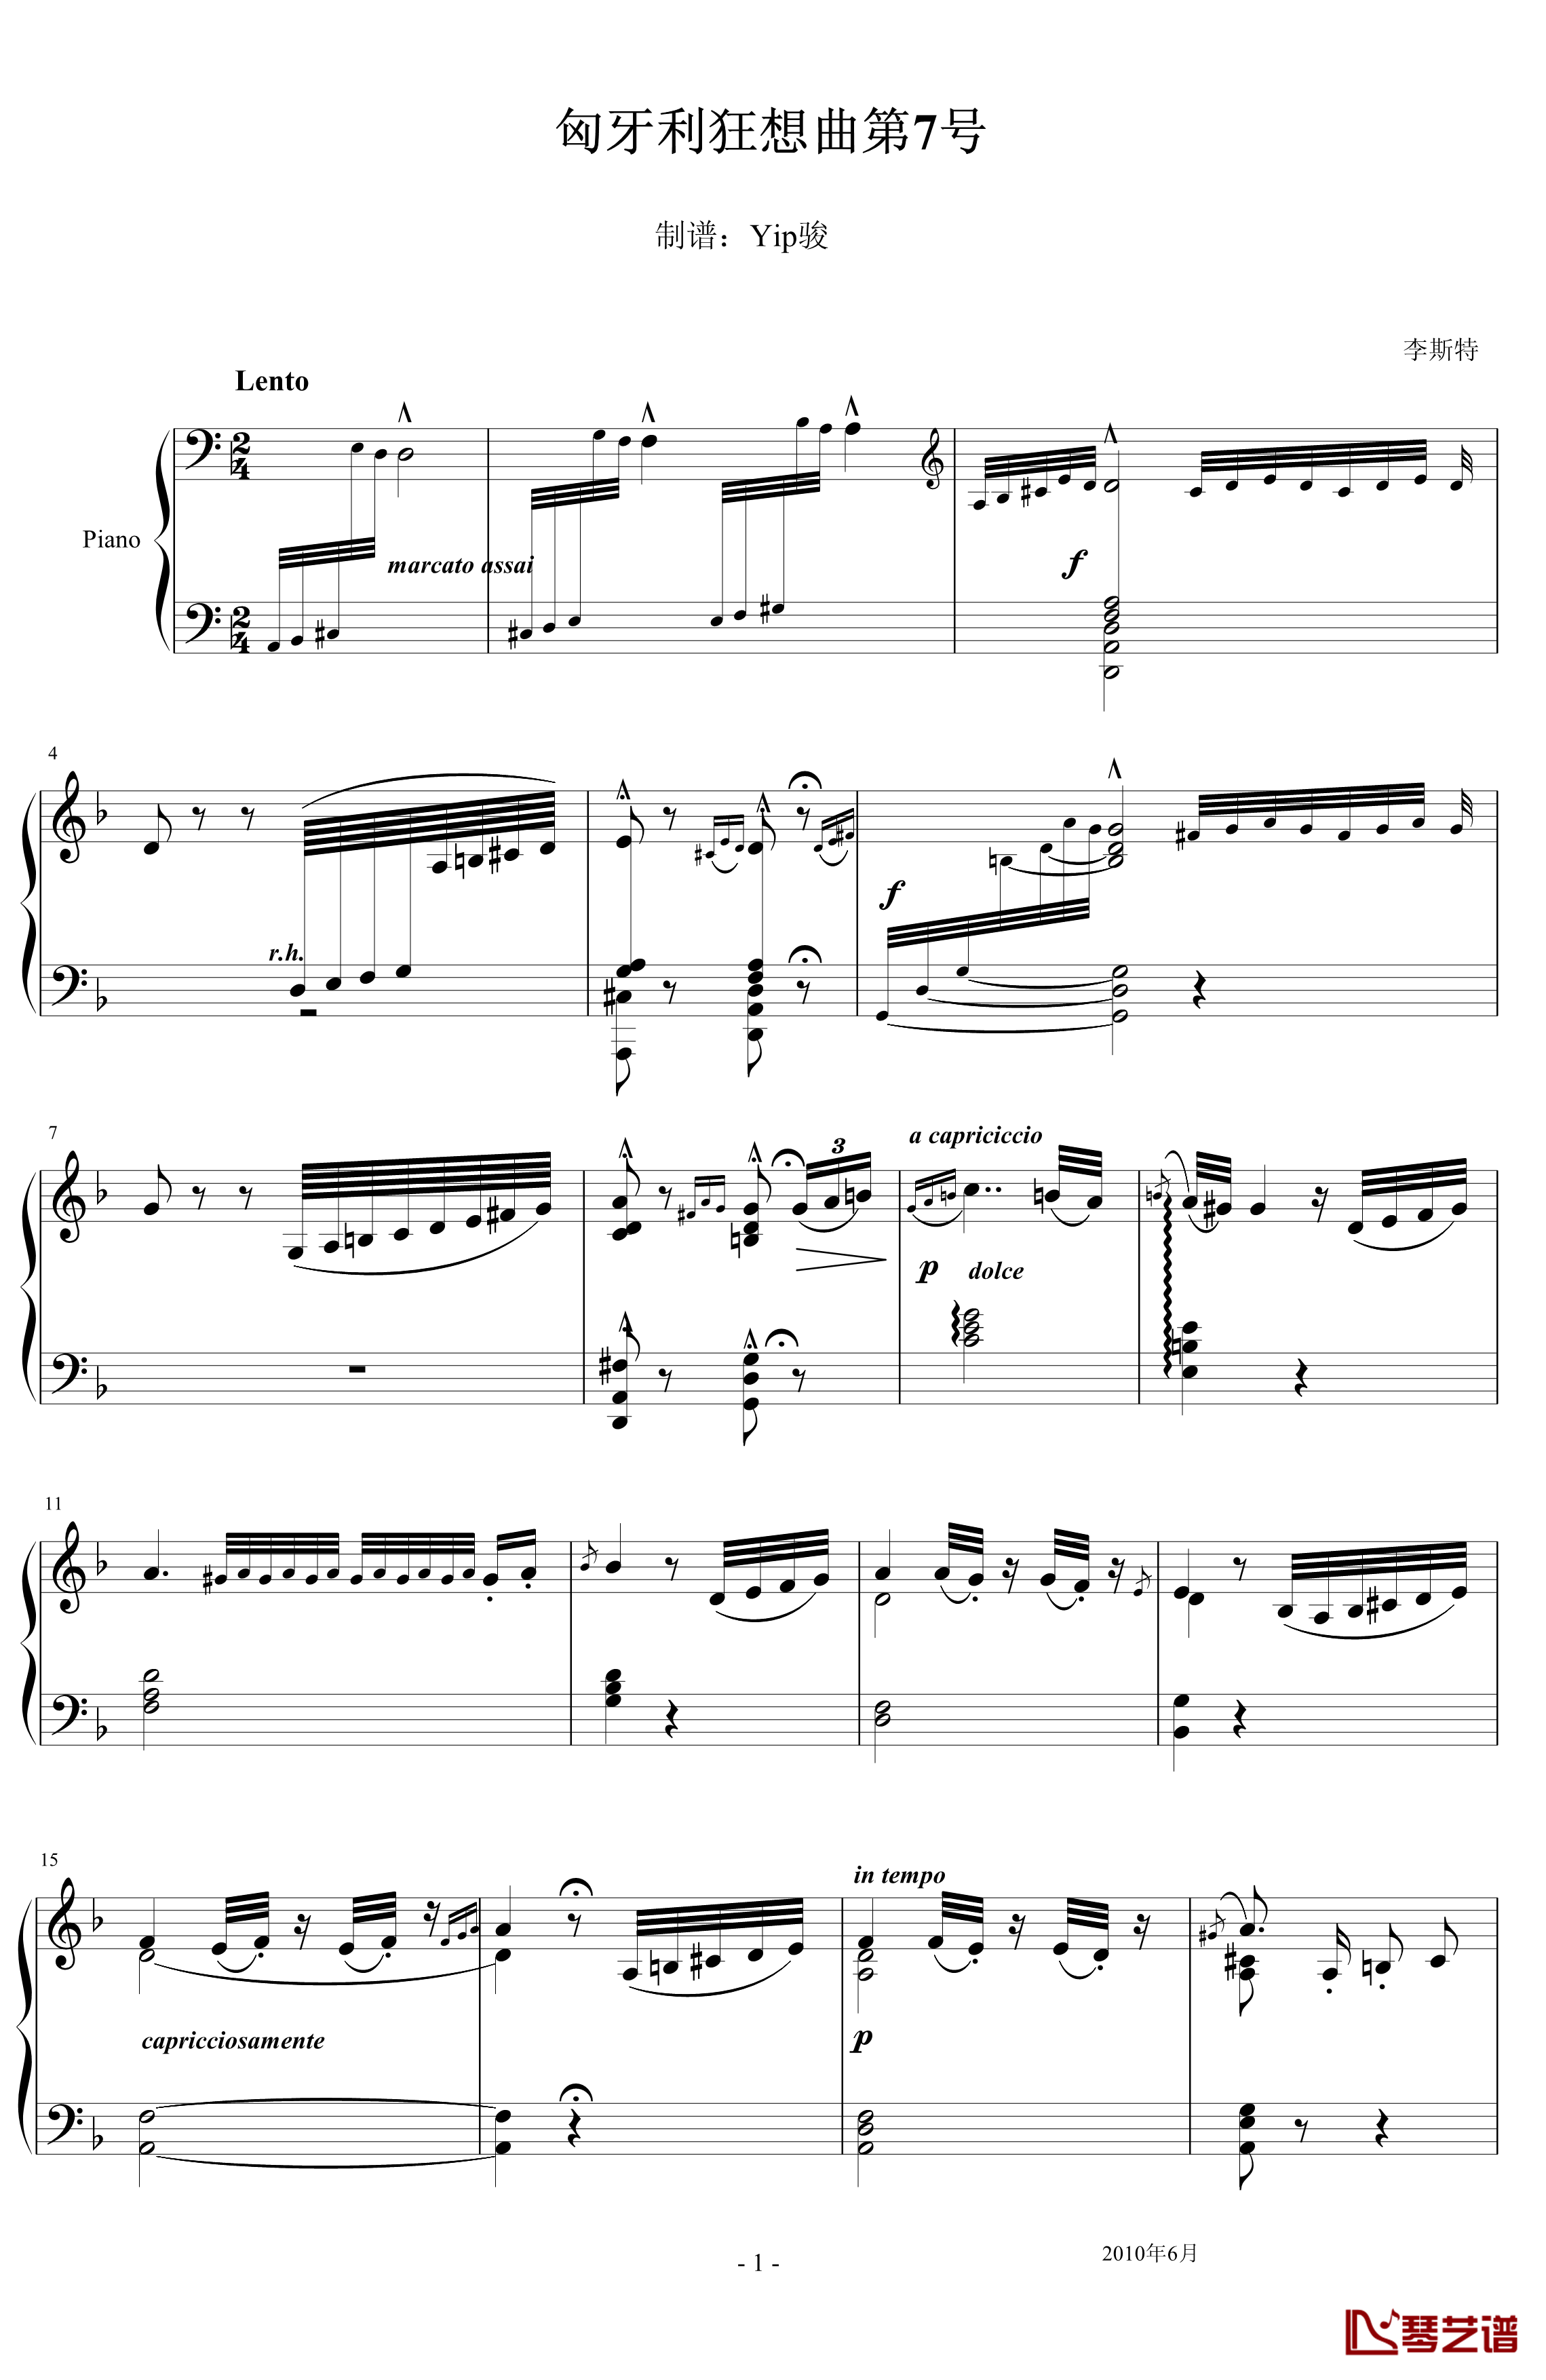 匈牙利狂想曲第7号钢琴谱-一首欢快活泼的舞曲-李斯特1